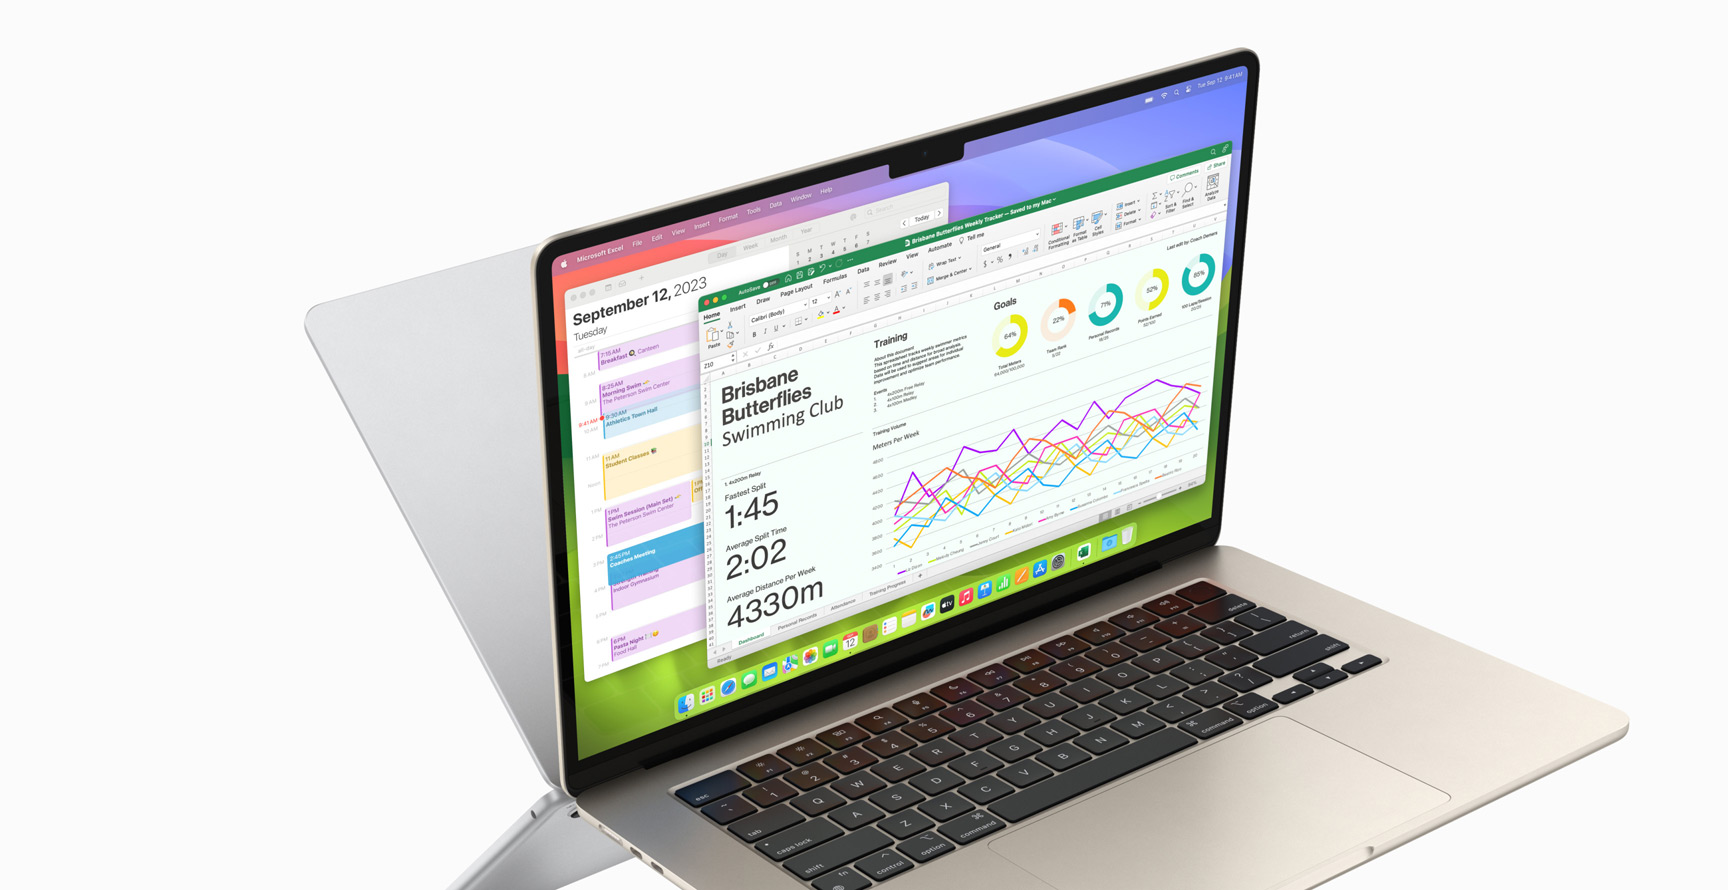 O Calendar e o Microsoft Excel a serem executados no MacBook Air.